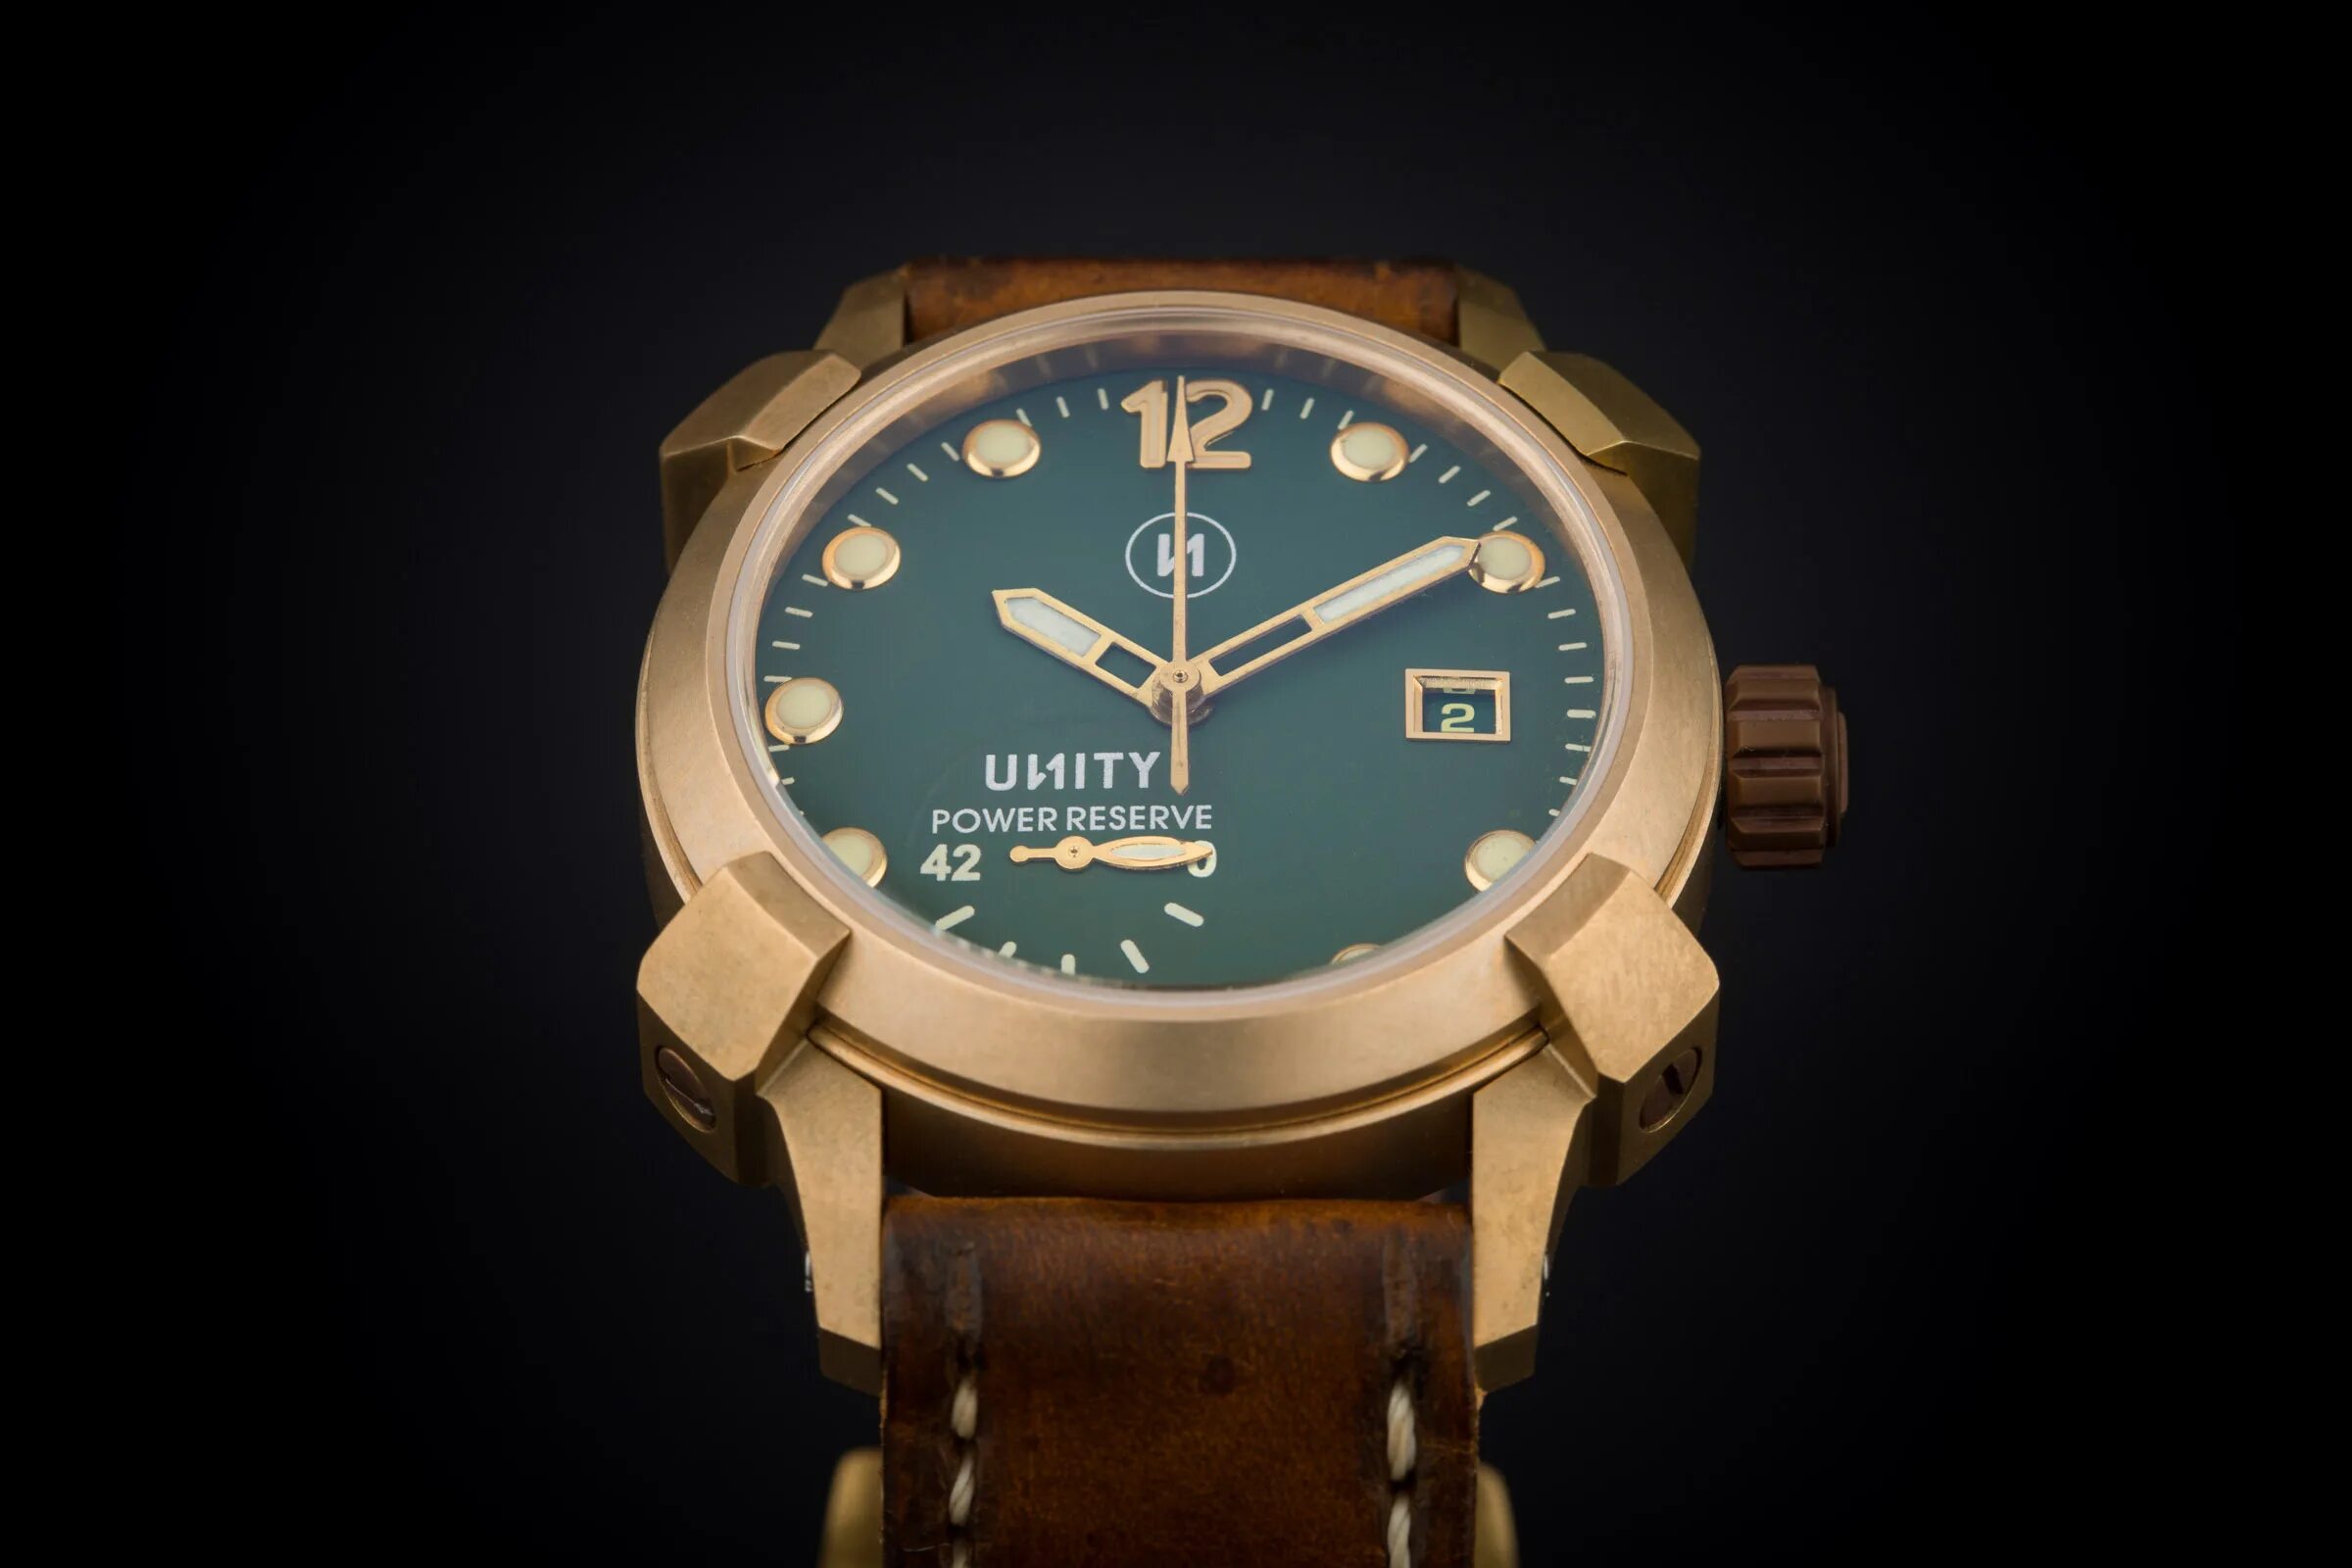 Часы Bronze and Green. Часы для Юнити. Diesel Limited часы бронза. Наручные часы от Unity. Unity часы